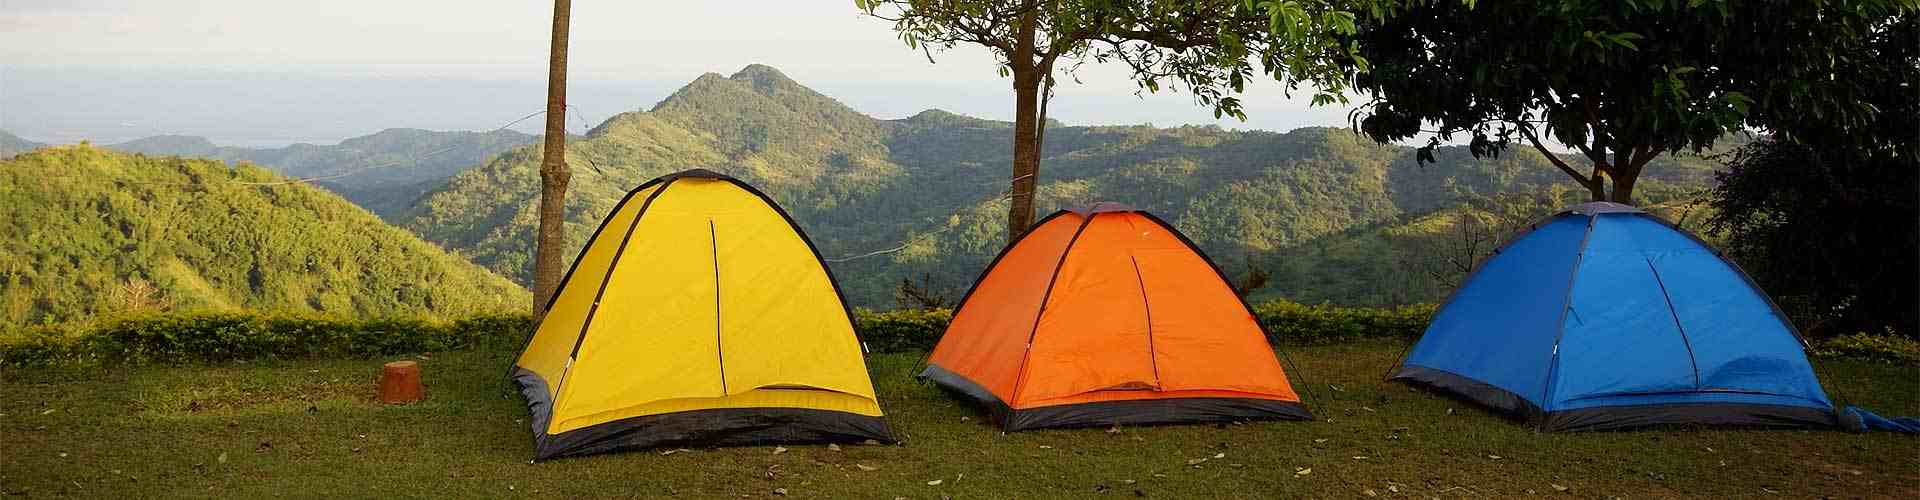 Campings y bungalows en Neguillas